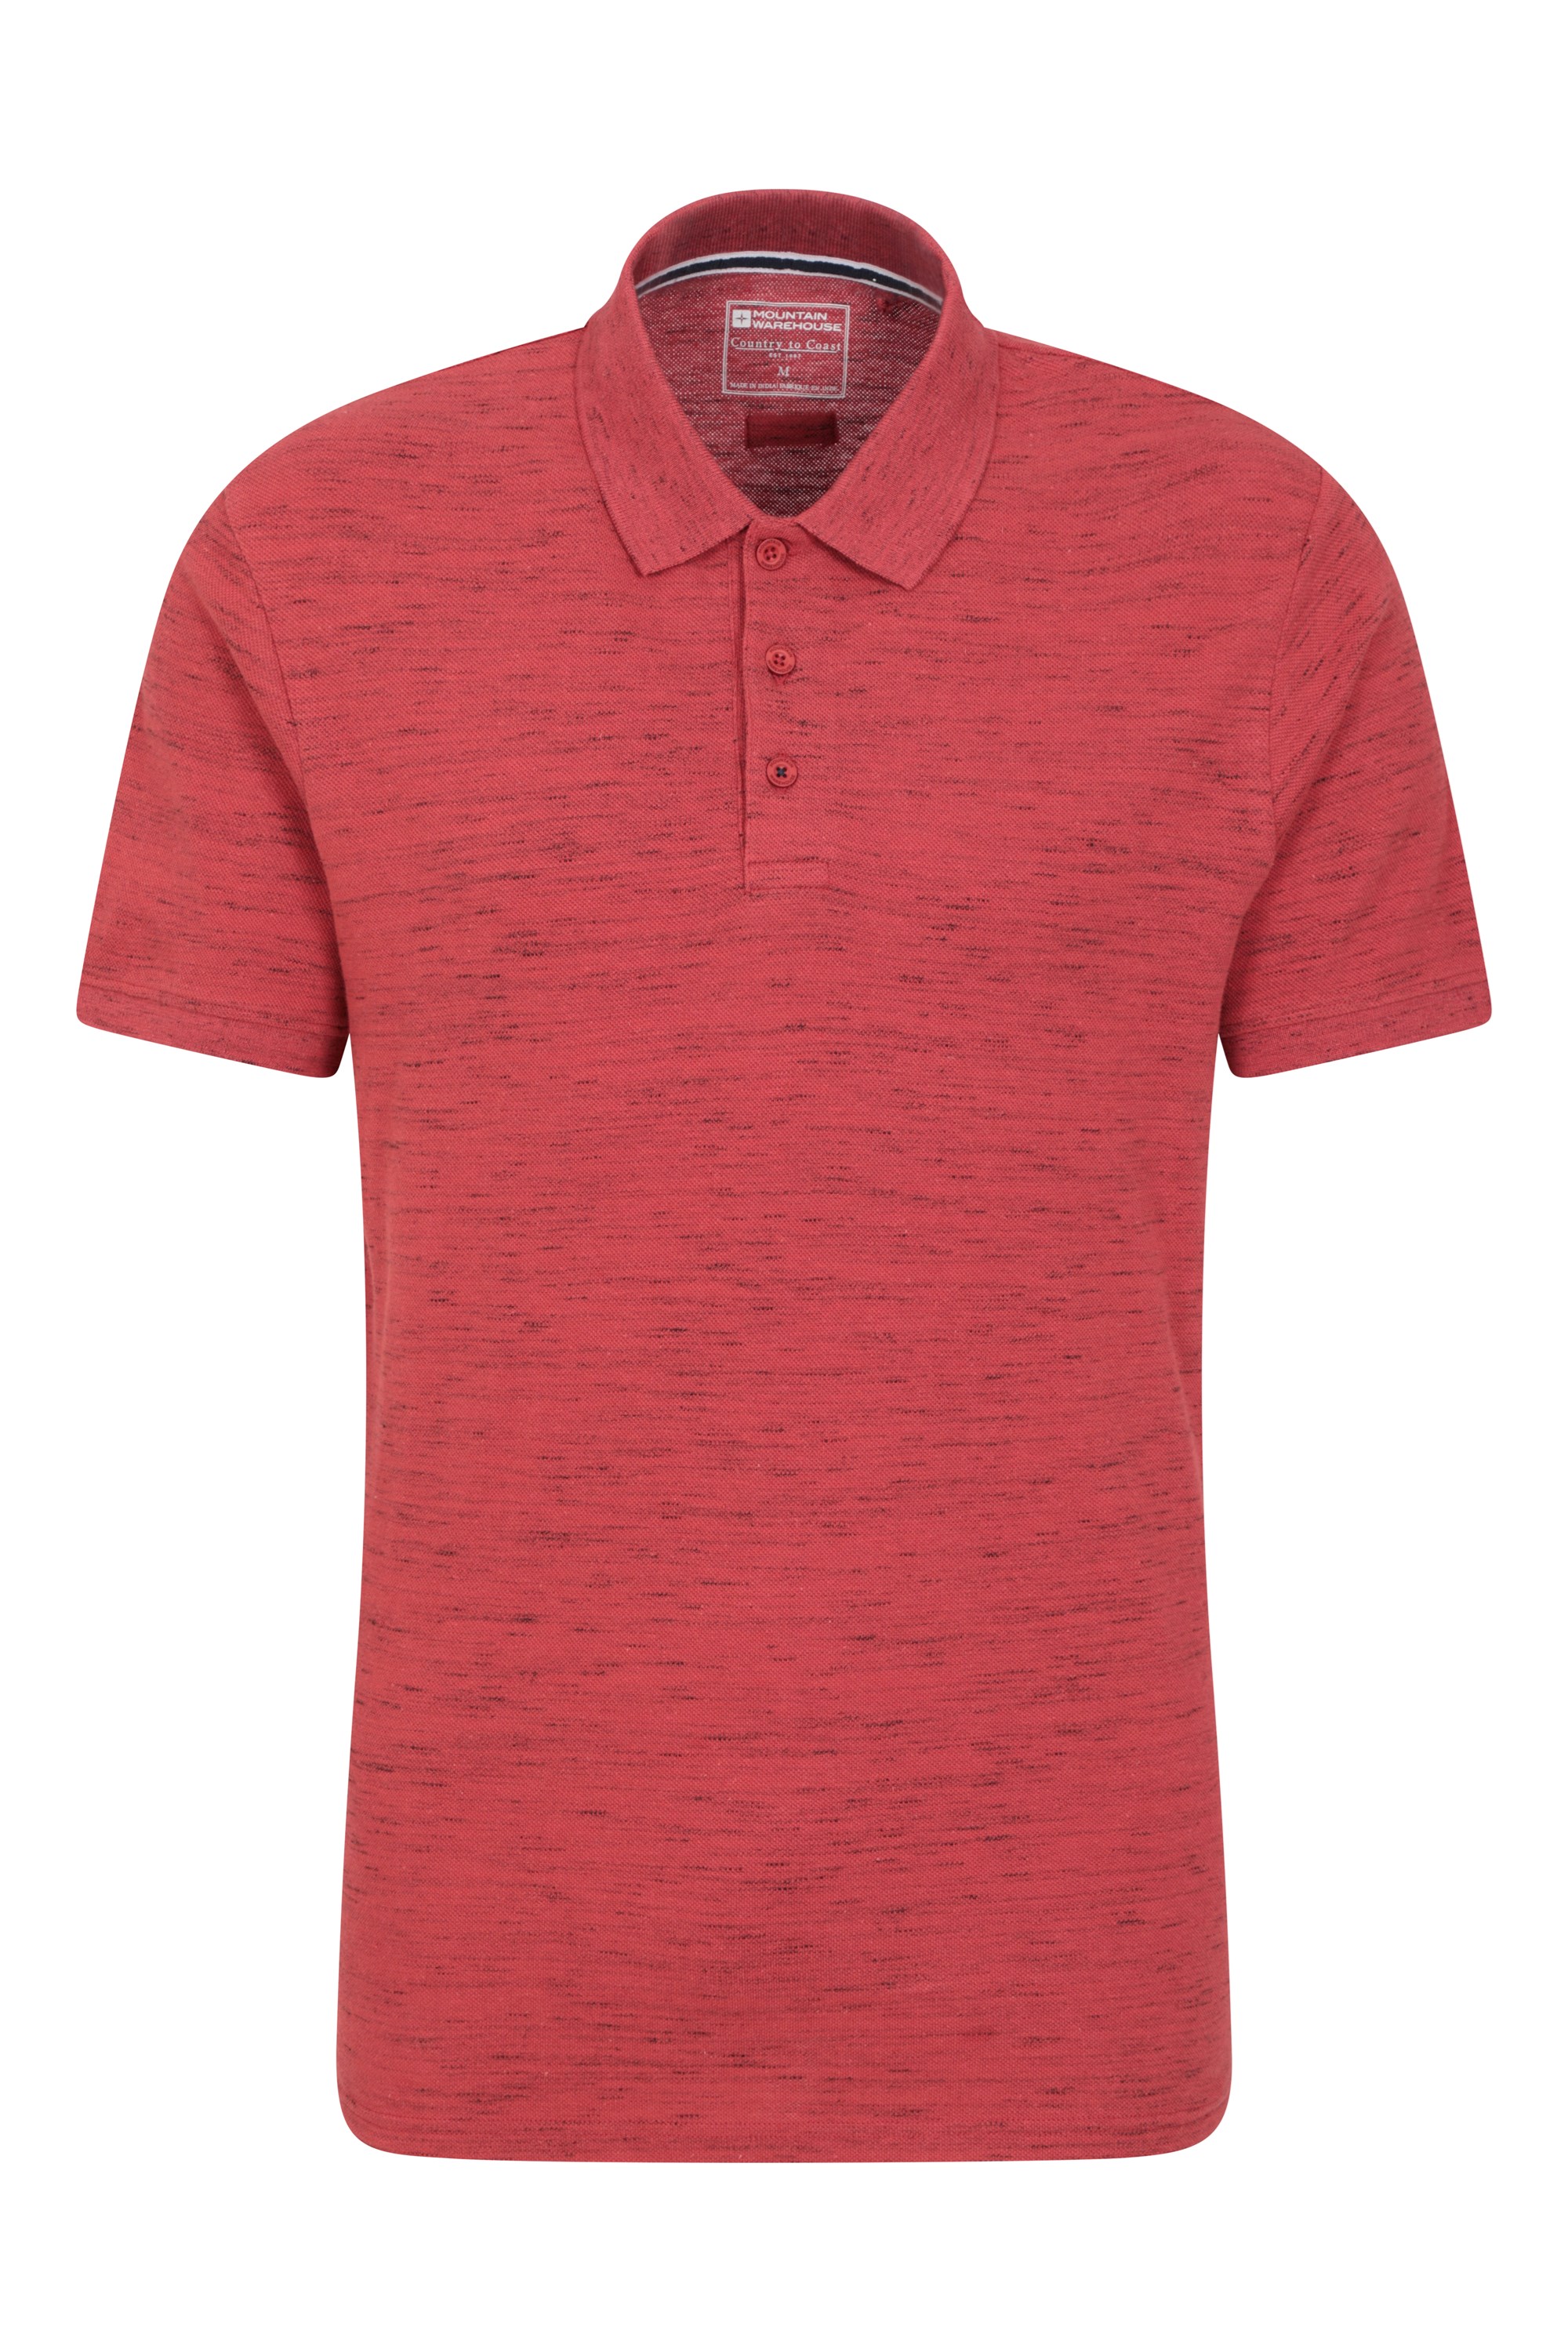 Dawnay Pique Slub Textured Mens Polo Shirt - Pink